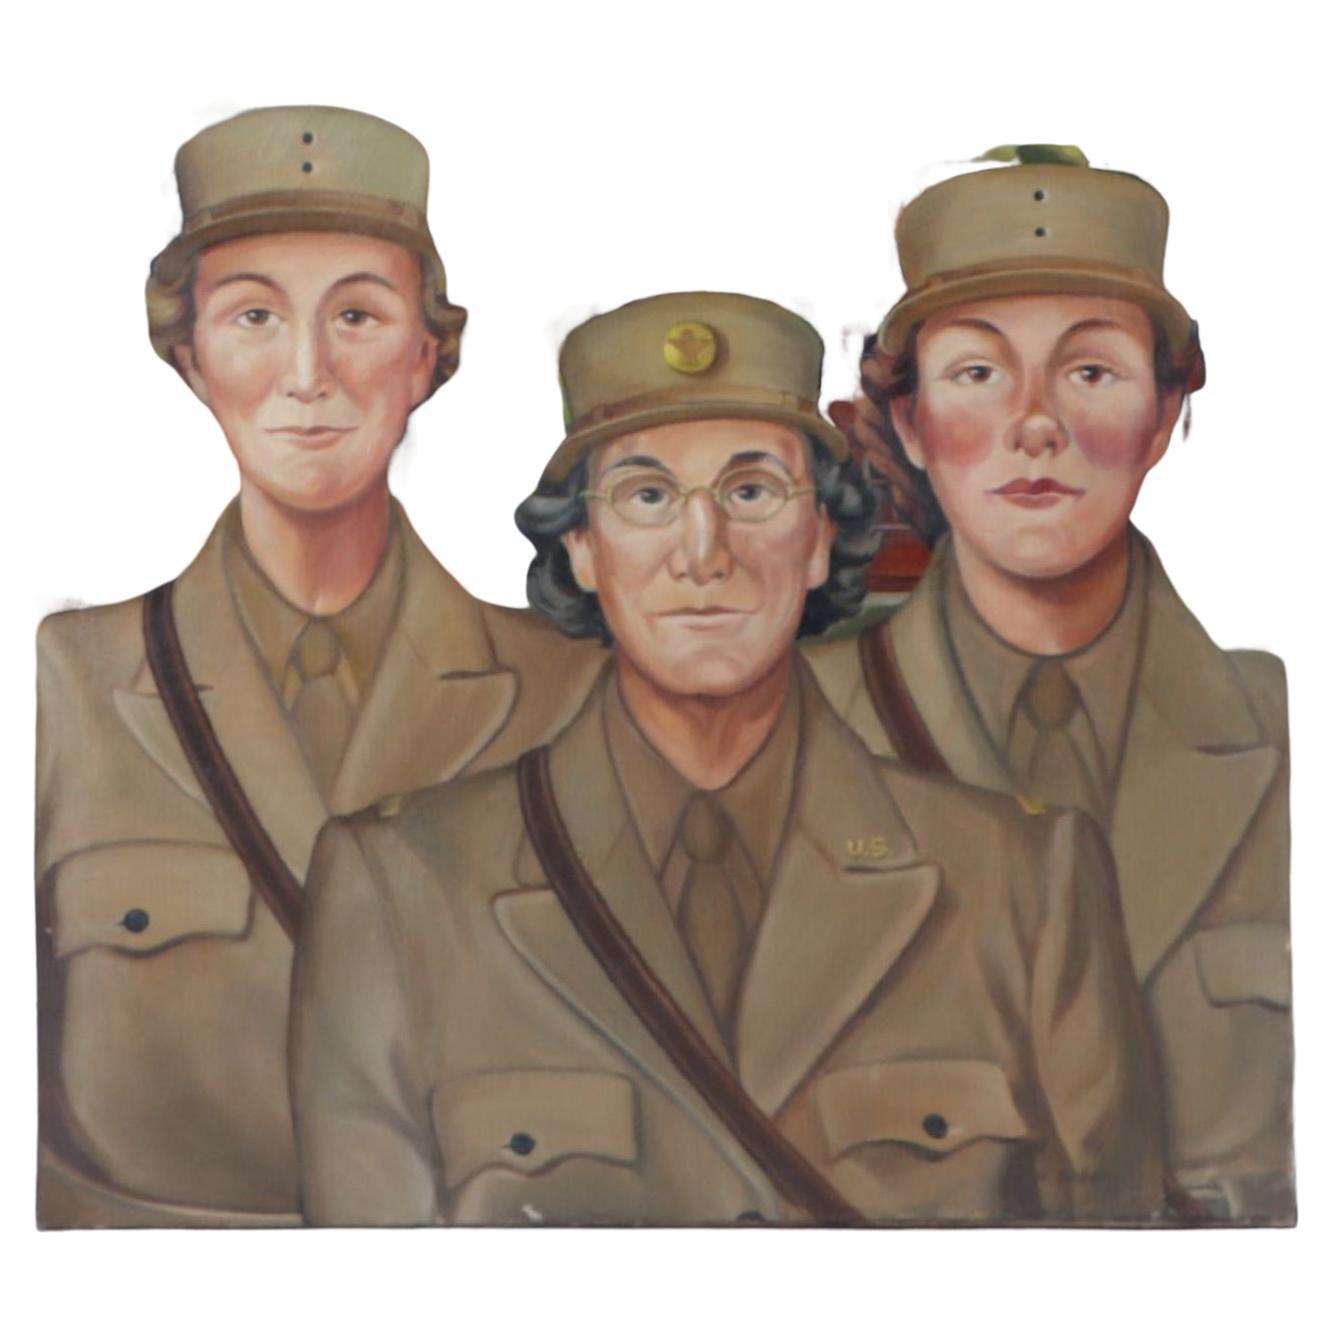 Peinture encadrée de femmes de l'armée WAC, datant de 1950. Huile sur toile, non signée.